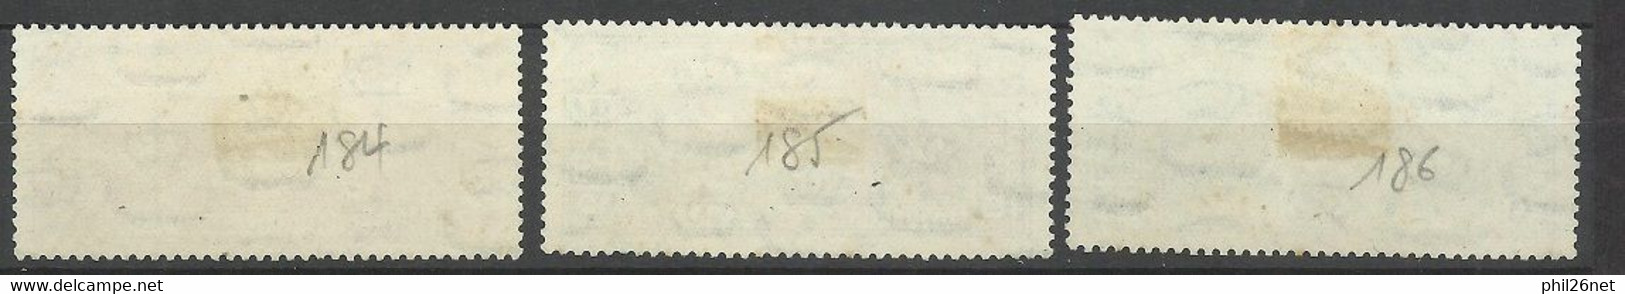 Egypte  N°184 à 186 Signature Du Traité Anglo-Egyptien 1937   Oblitérés B/T B  Voir Scans  Soldé ! ! ! - Used Stamps